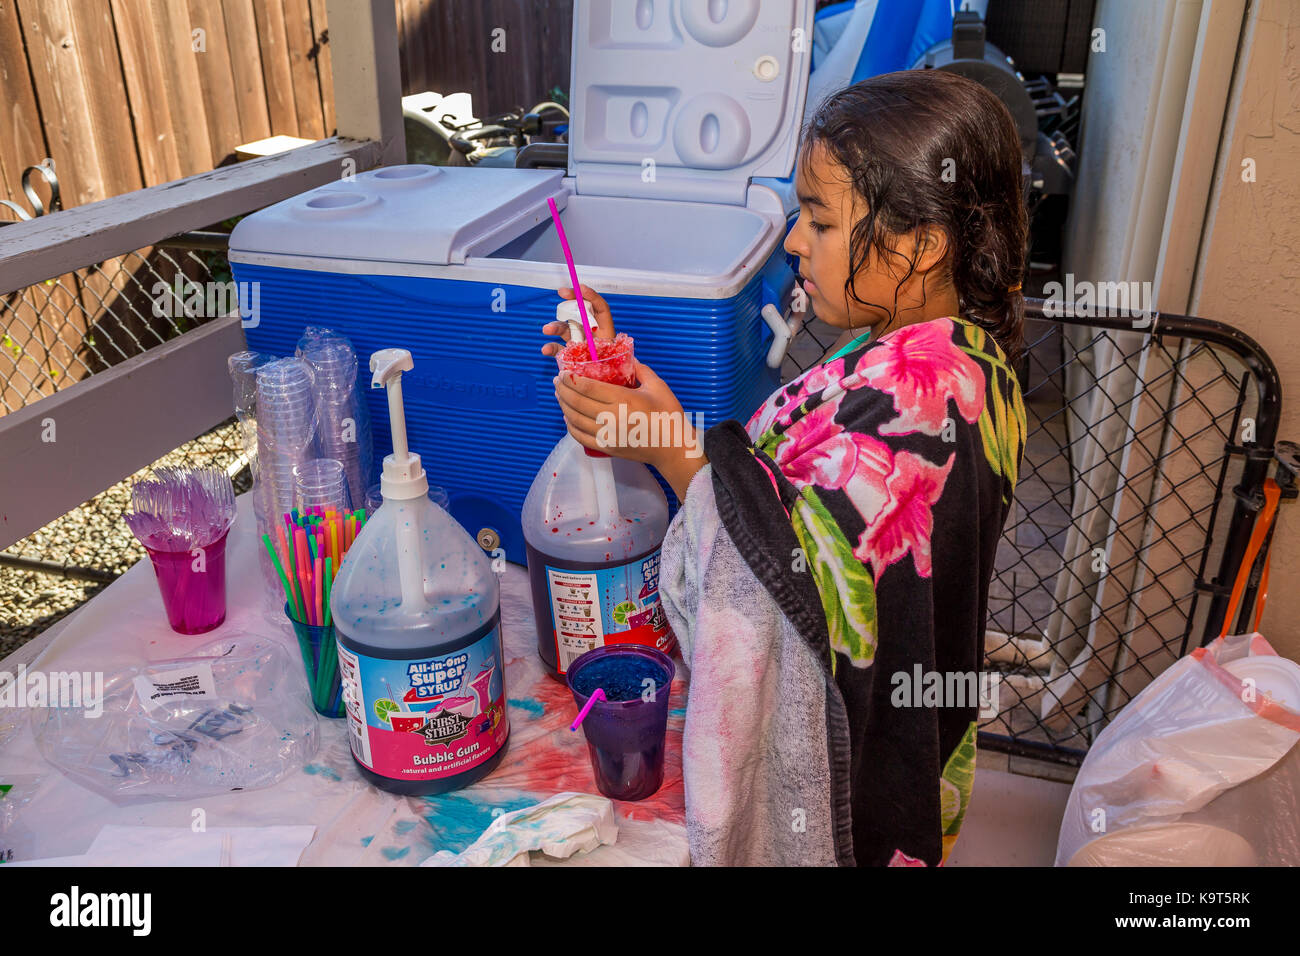 Hispanic girl, jeune fille, fille, faisant de cône de neige à saveur de cerise, pool party, Castro Valley, comté d'Alameda, Californie, Etats-Unis, Amérique du Nord Banque D'Images